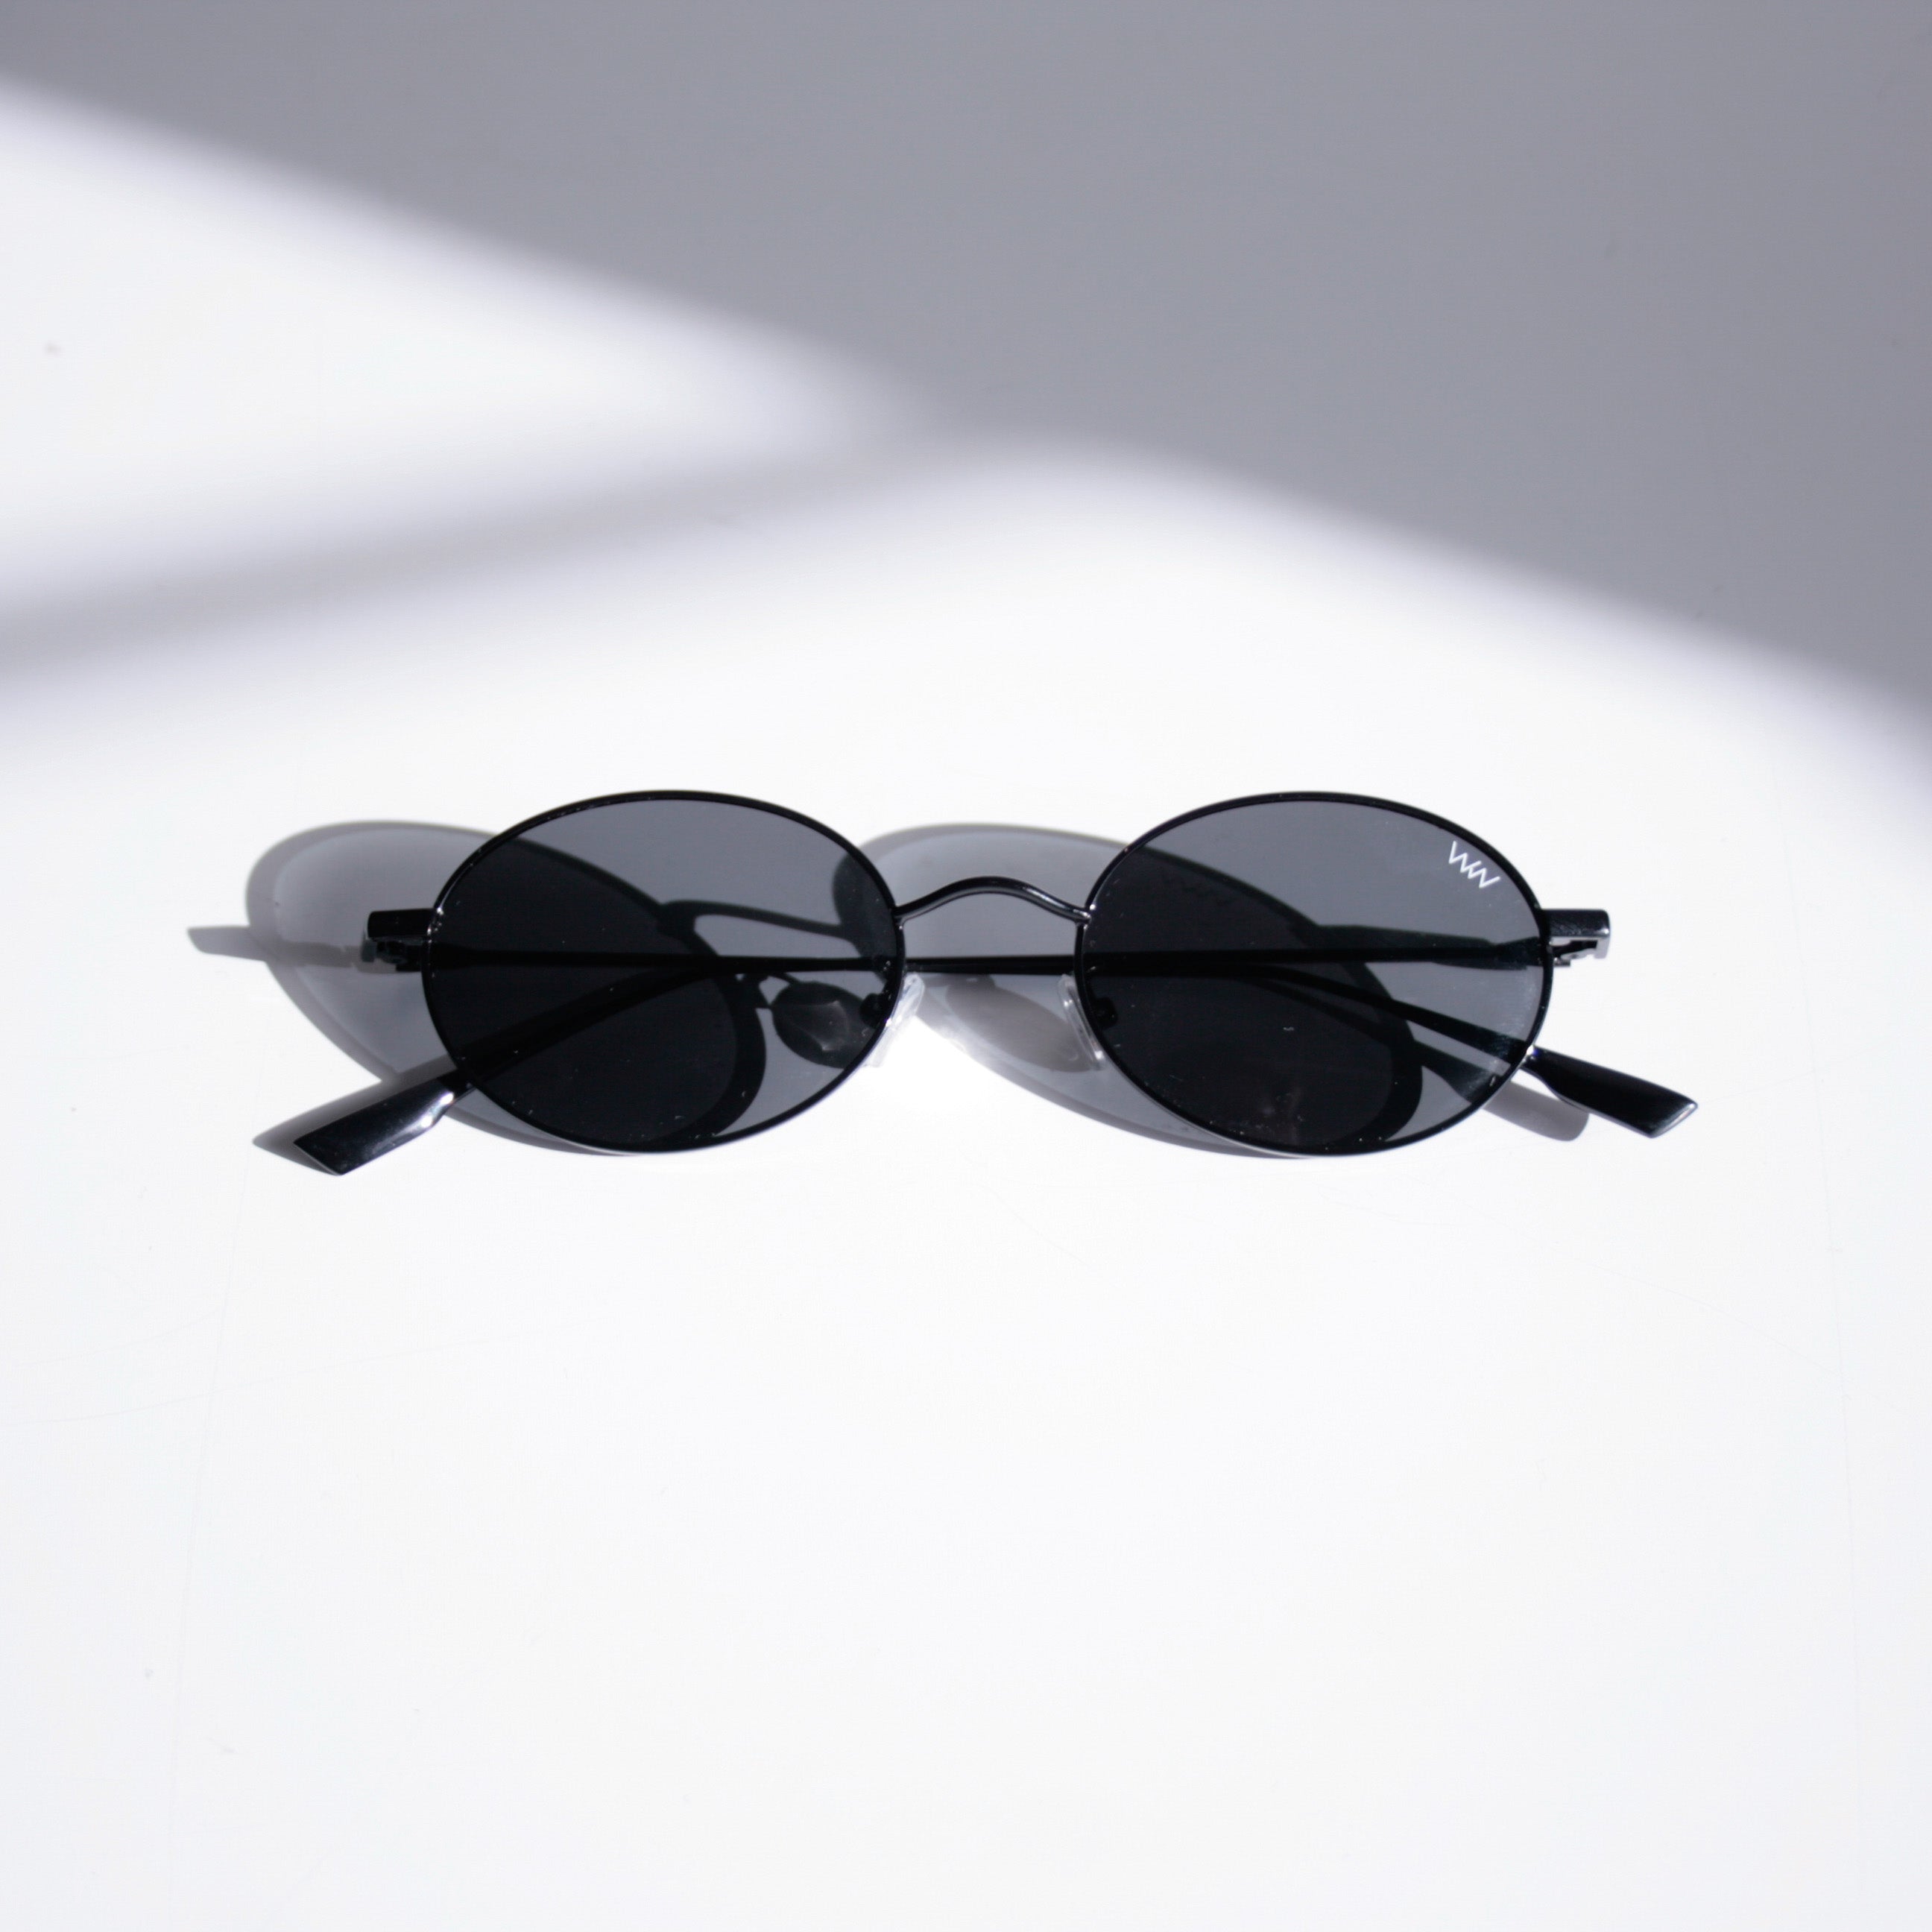 Wear Walters Urban - Metal frame sunglasses – Wear Walters Eyewear | Sonnenbrillen